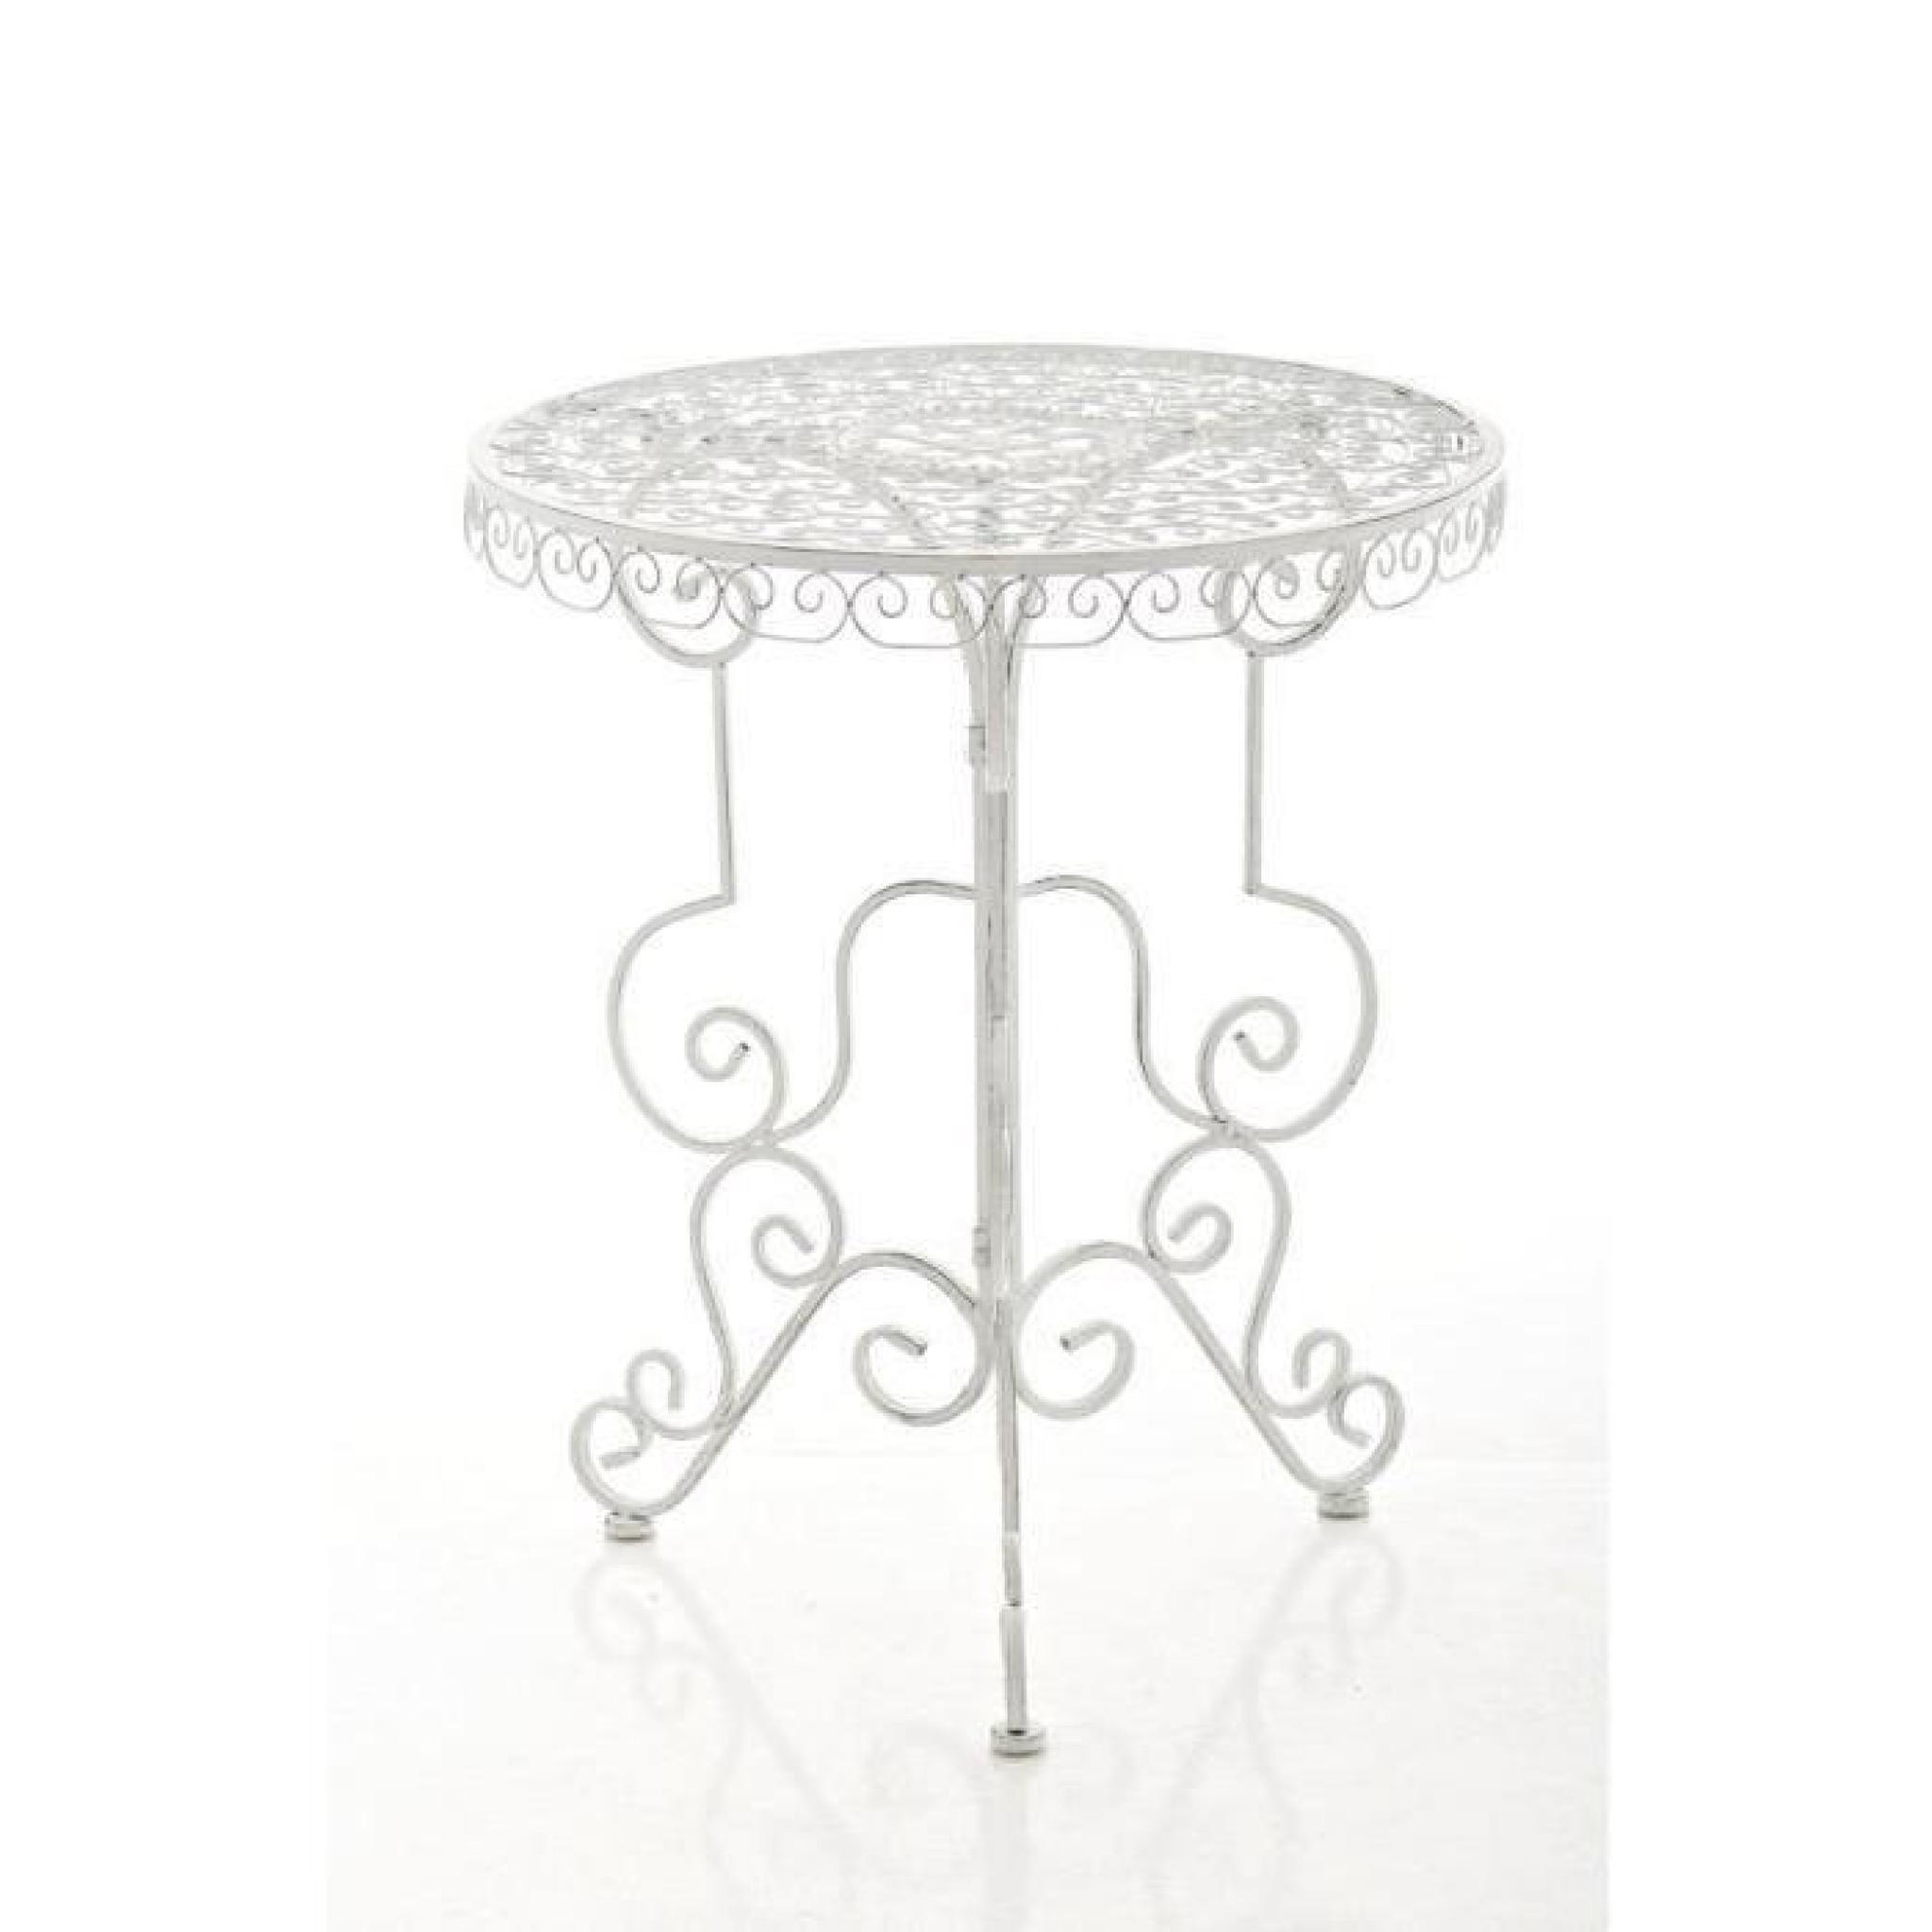 CLP Table de jardin ronde en fer forgé MINORE, faite à la main dans un style nostalgique, diamètre Ø 61,5 cm, 2 couleurs au choix...